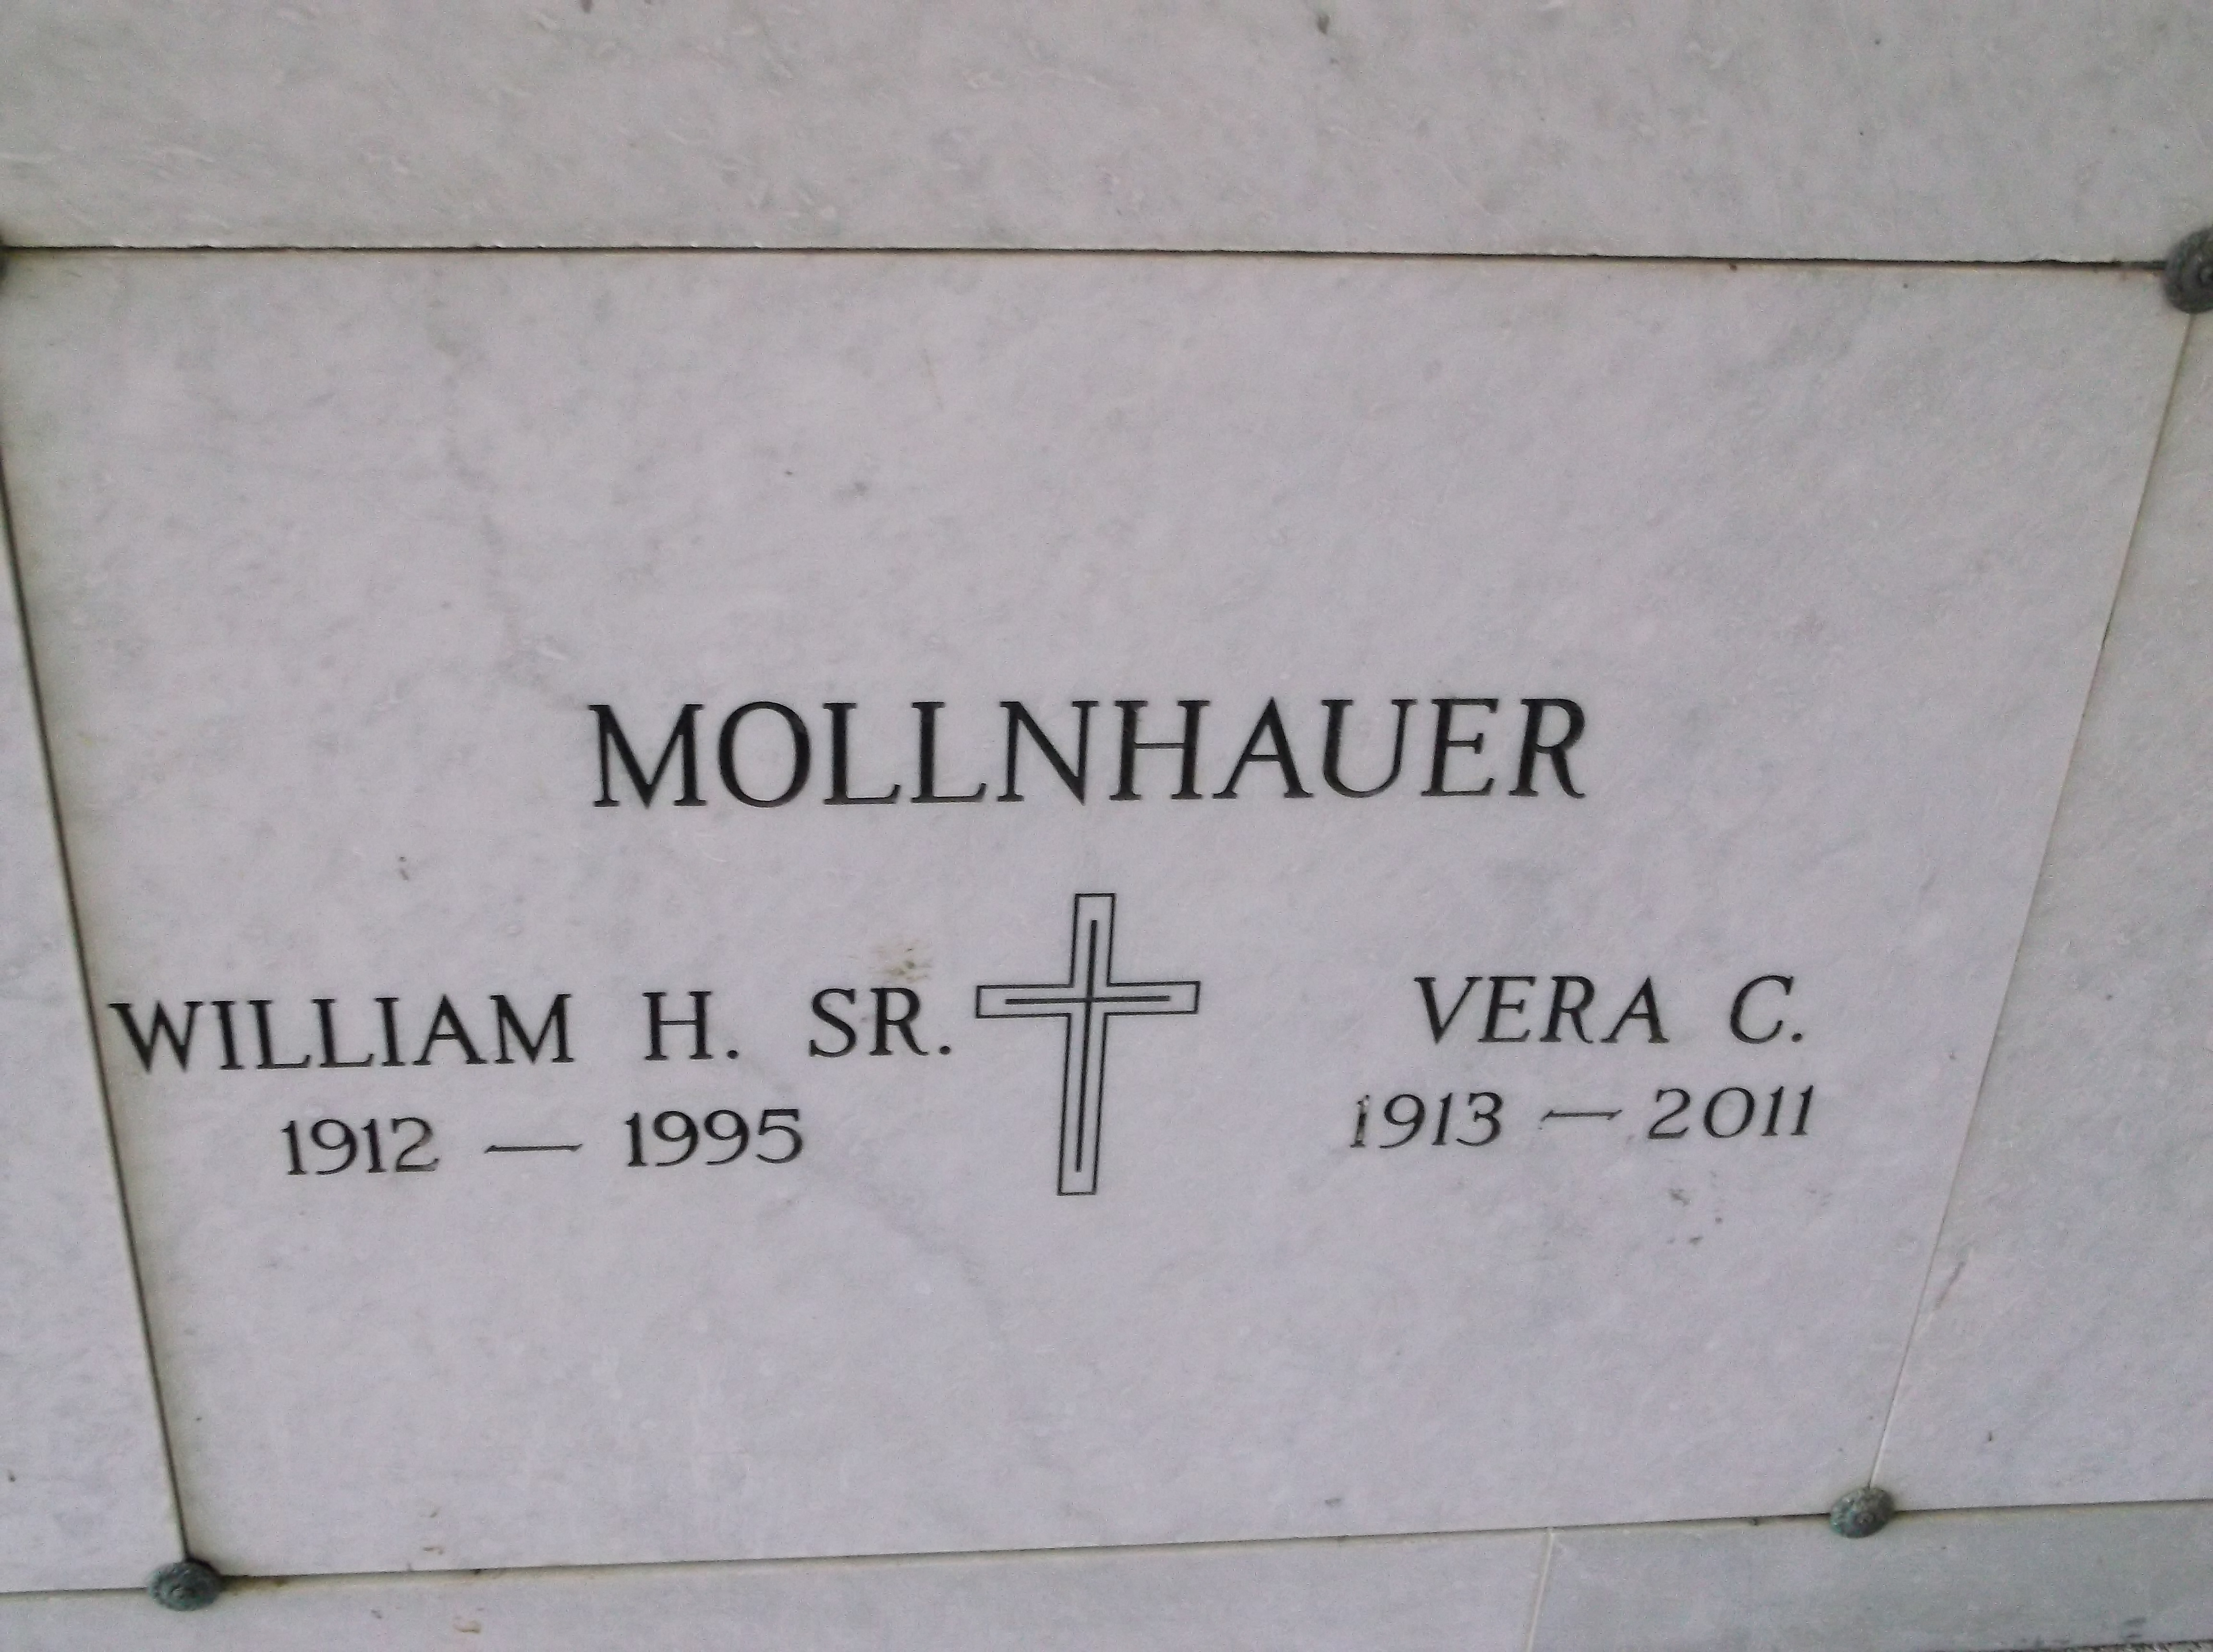 Vera C Mollnhauer